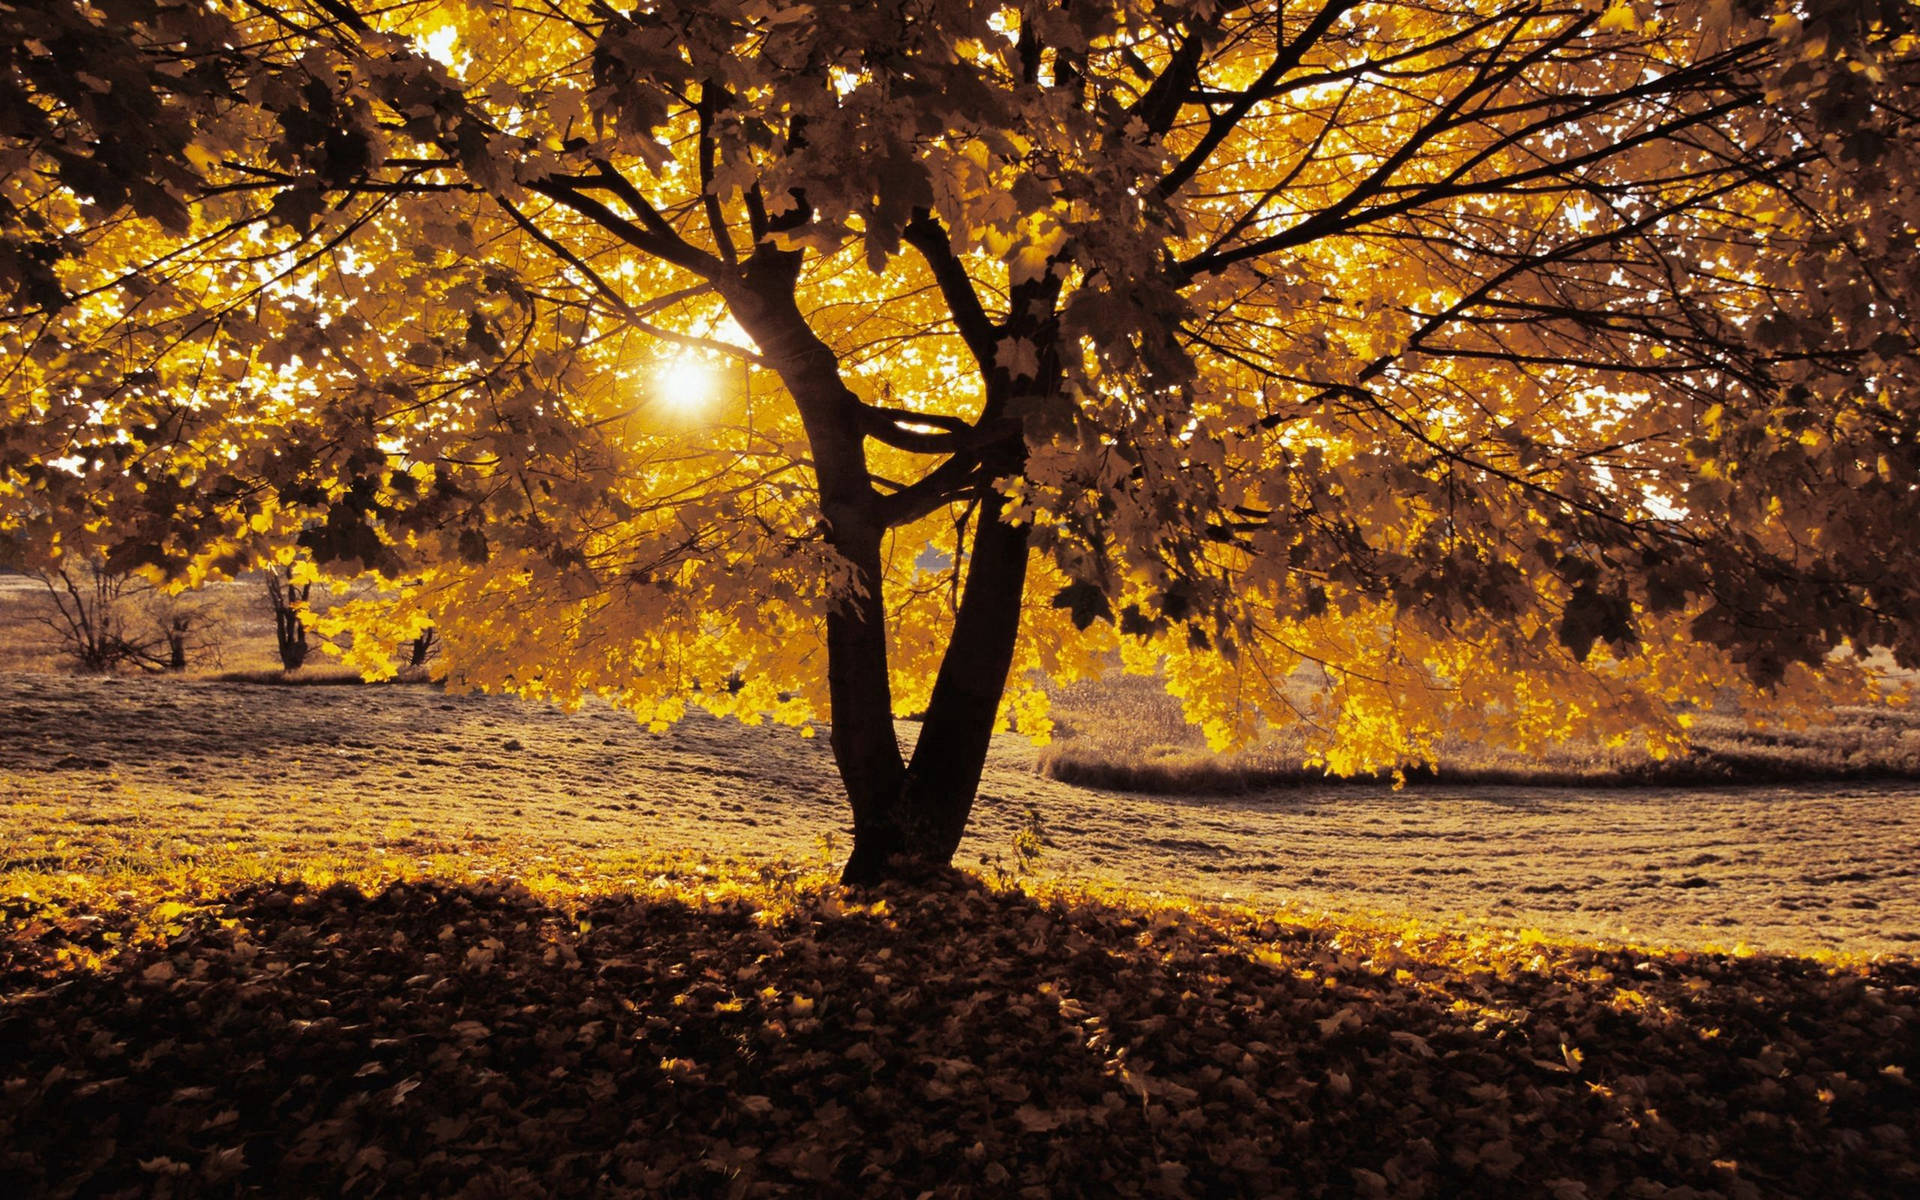 Autumn Yellow Tree And Warm Sunlight